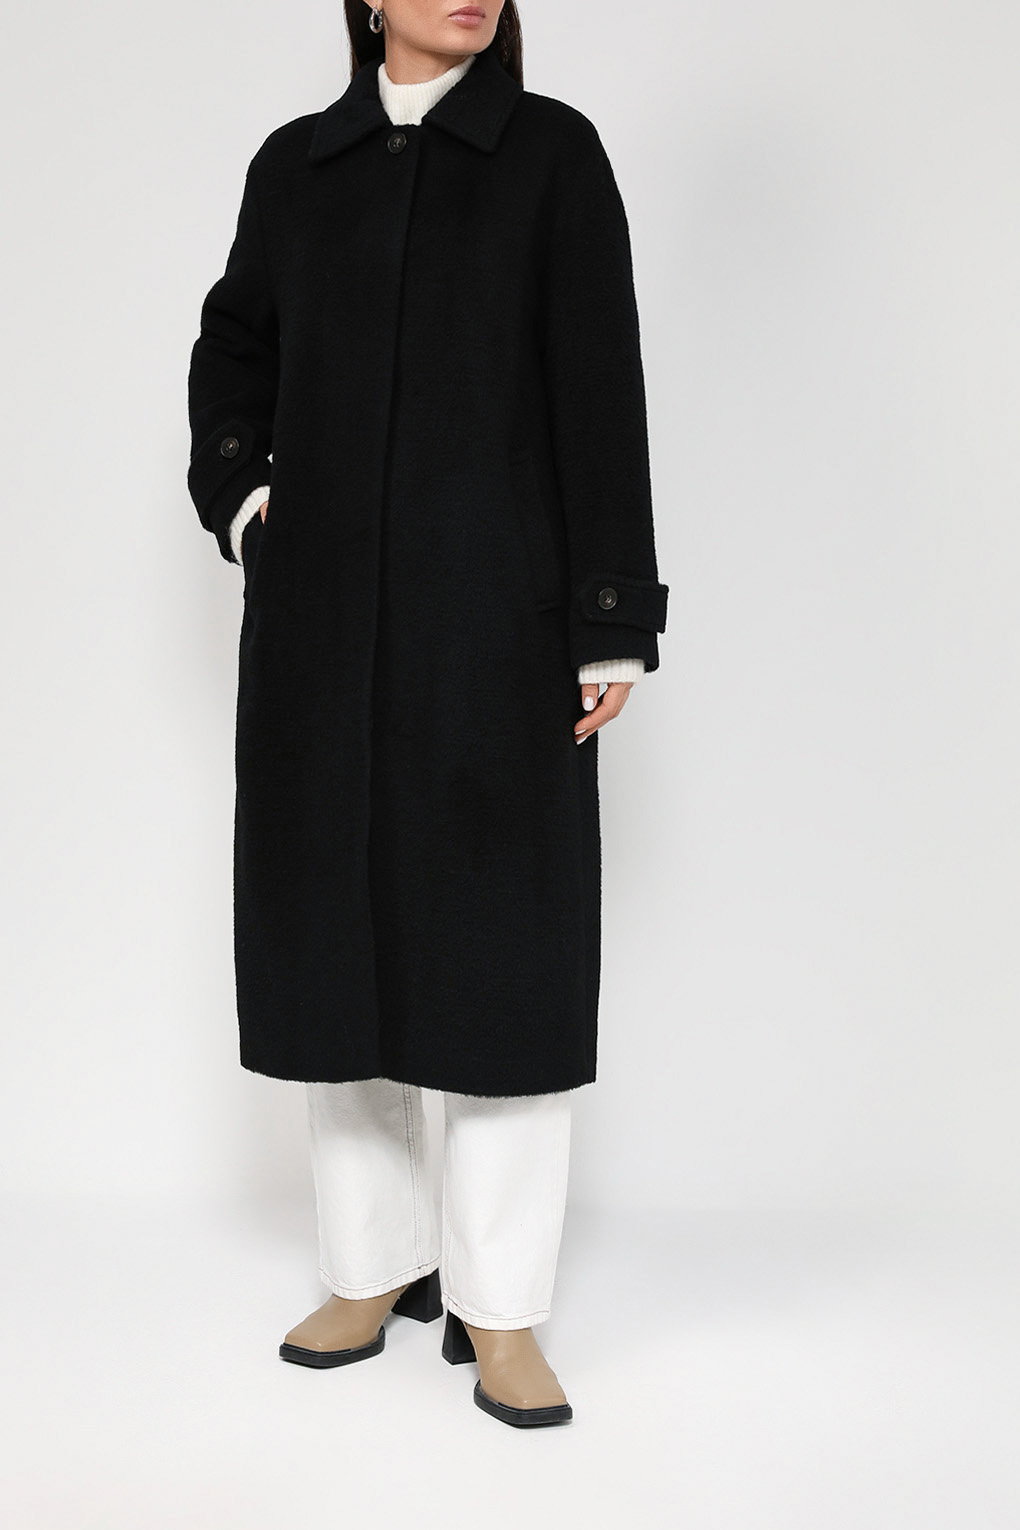 Пальто женское SABRINA SCALA SS22076181-001 черное 42 RU